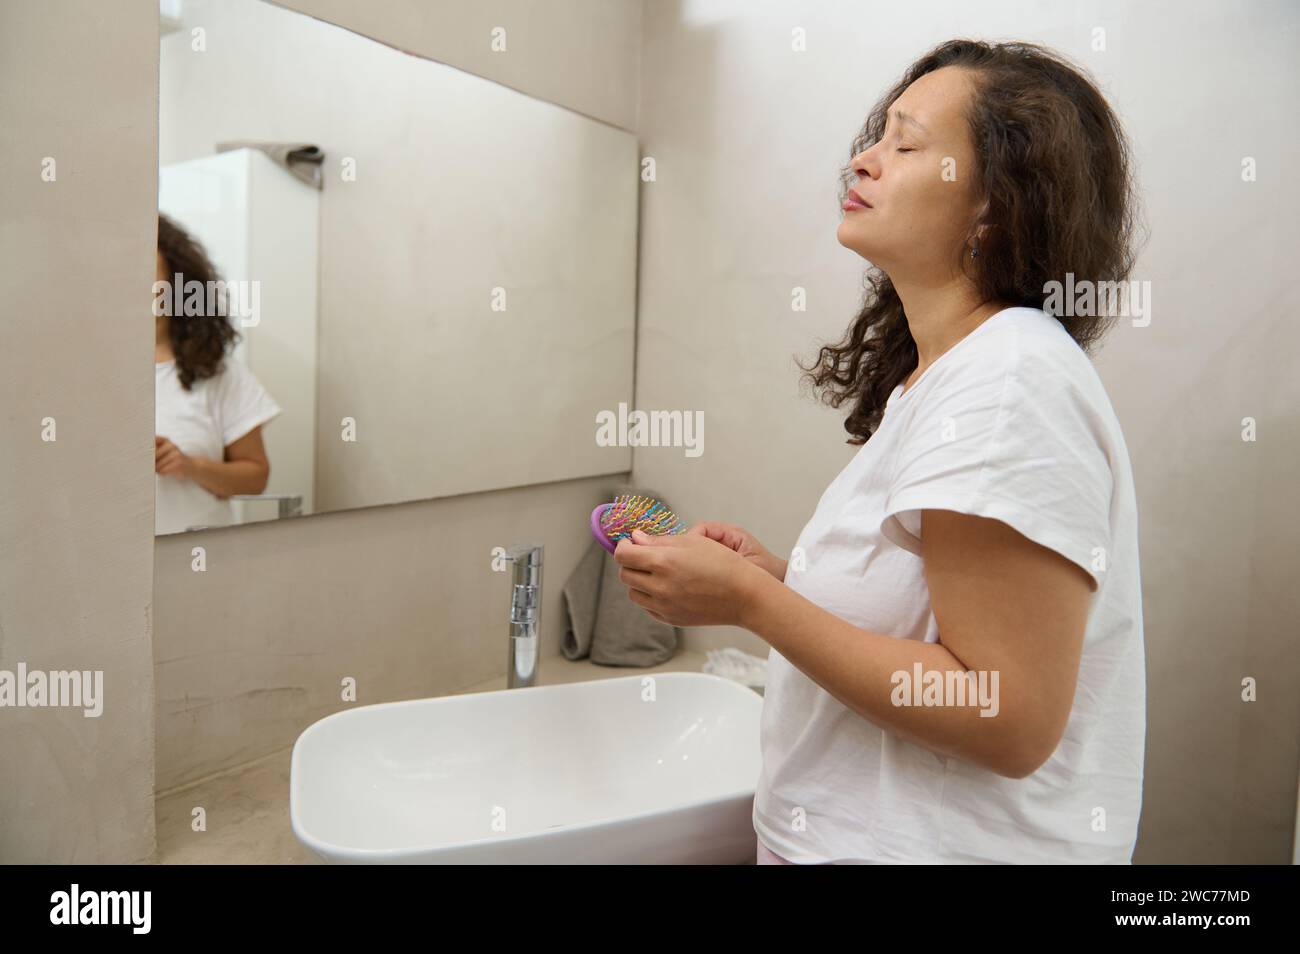 Besorgte junge Frau reflektiert sich im Spiegel, besorgt über Haarausfall, kämmt im Spiegel, hält Haarbürste und Sperre. Verärgerte junge Frau, die fe zählt Stockfoto